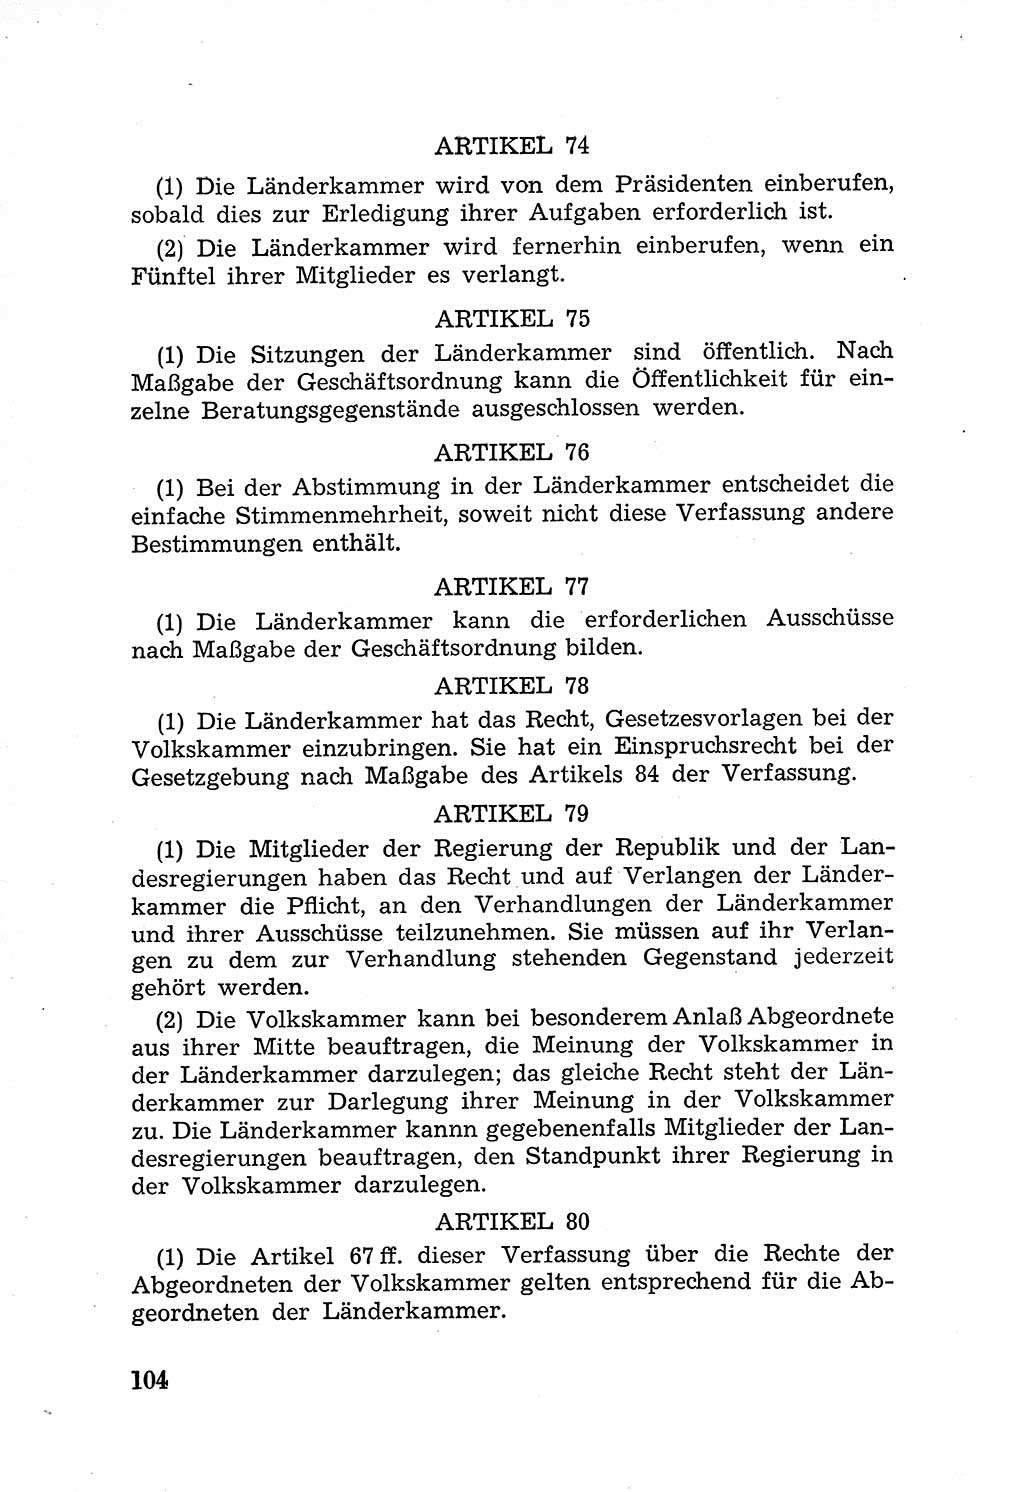 Rechtsstaat in zweierlei Hinsicht, Untersuchungsausschuß freiheitlicher Juristen (UfJ) [Bundesrepublik Deutschland (BRD)] 1956, Seite 104 (R.-St. UfJ BRD 1956, S. 104)